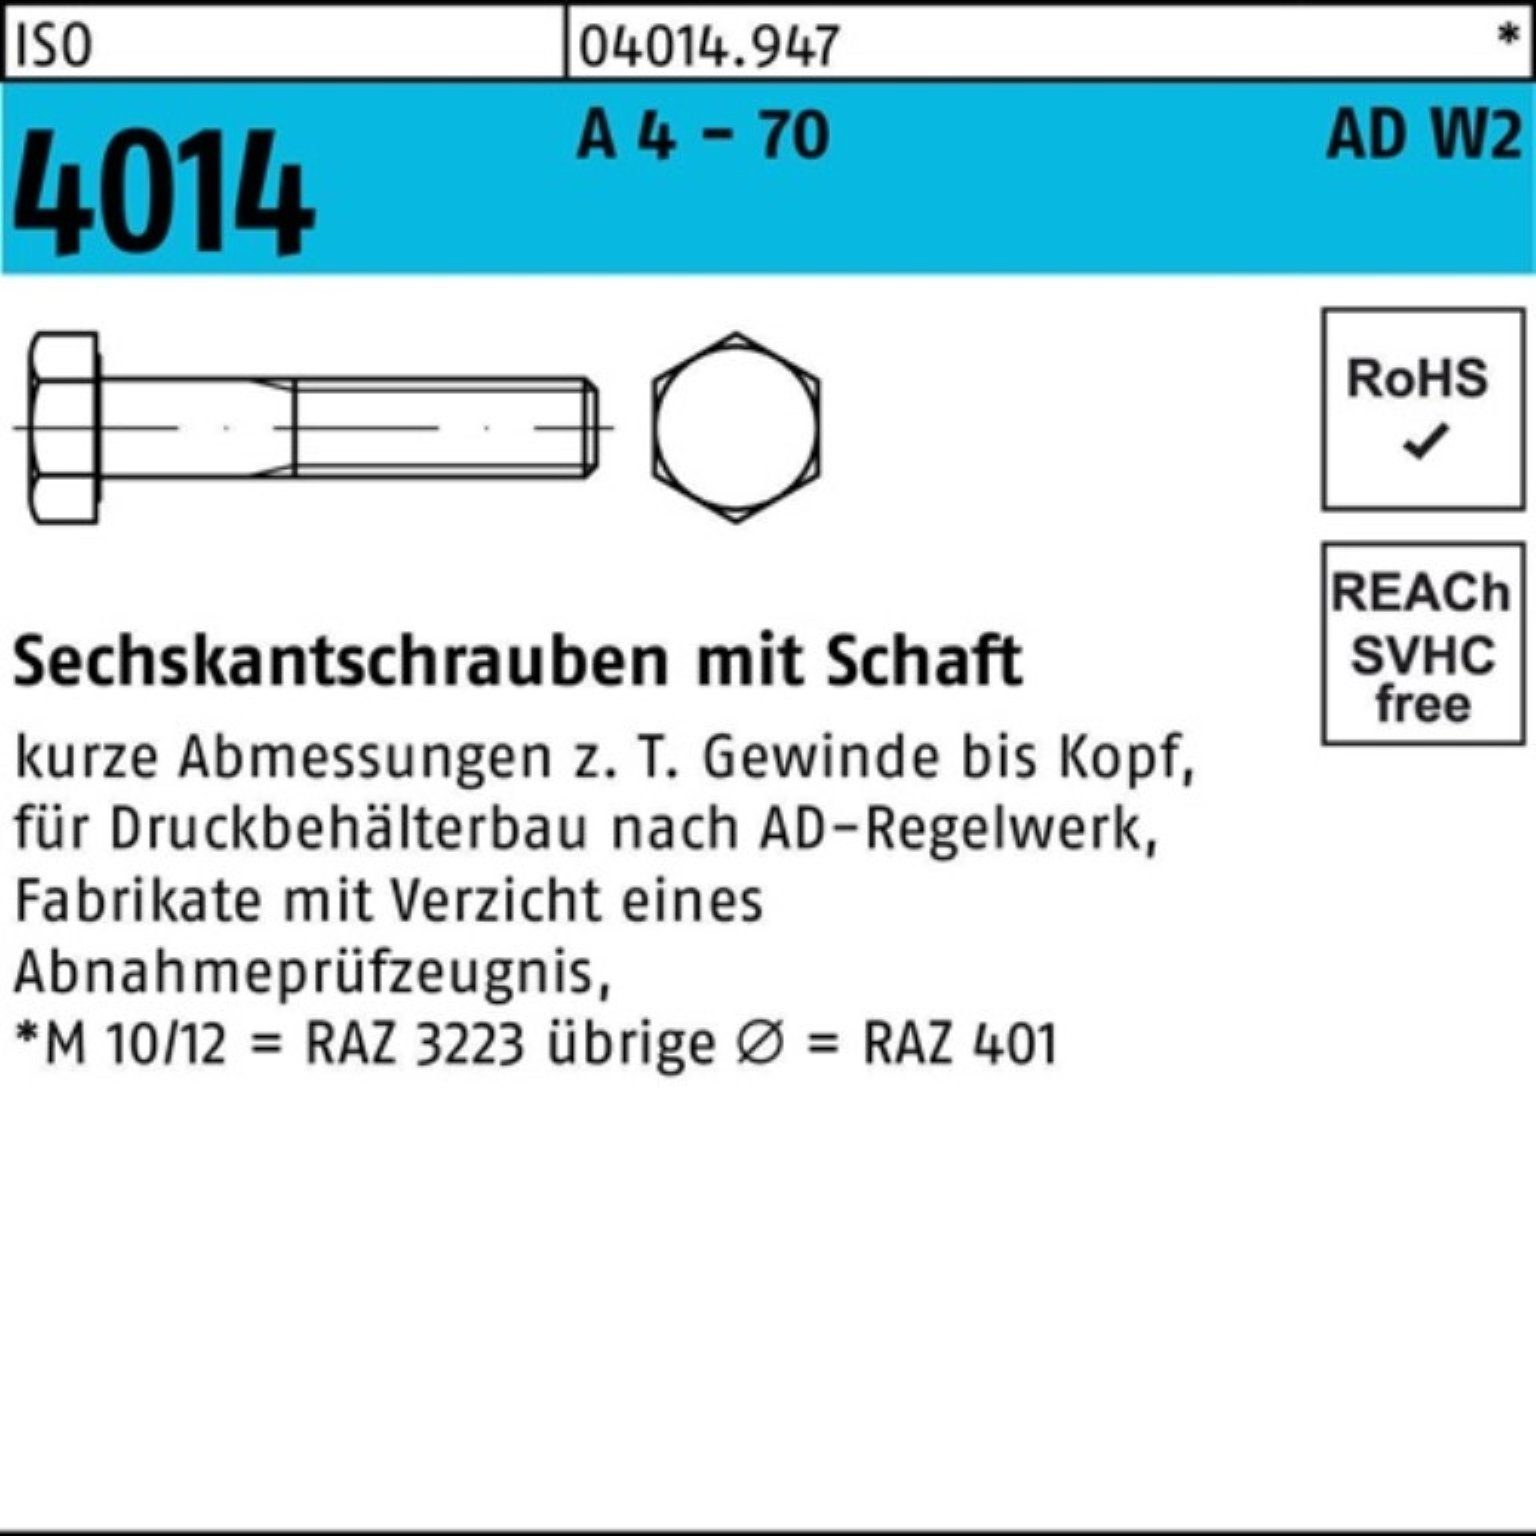 Bufab Sechskantschraube 100er Pack Sechskantschraube ISO 4014 Schaft M20x 75 A 4 - 70 AD-W2 25